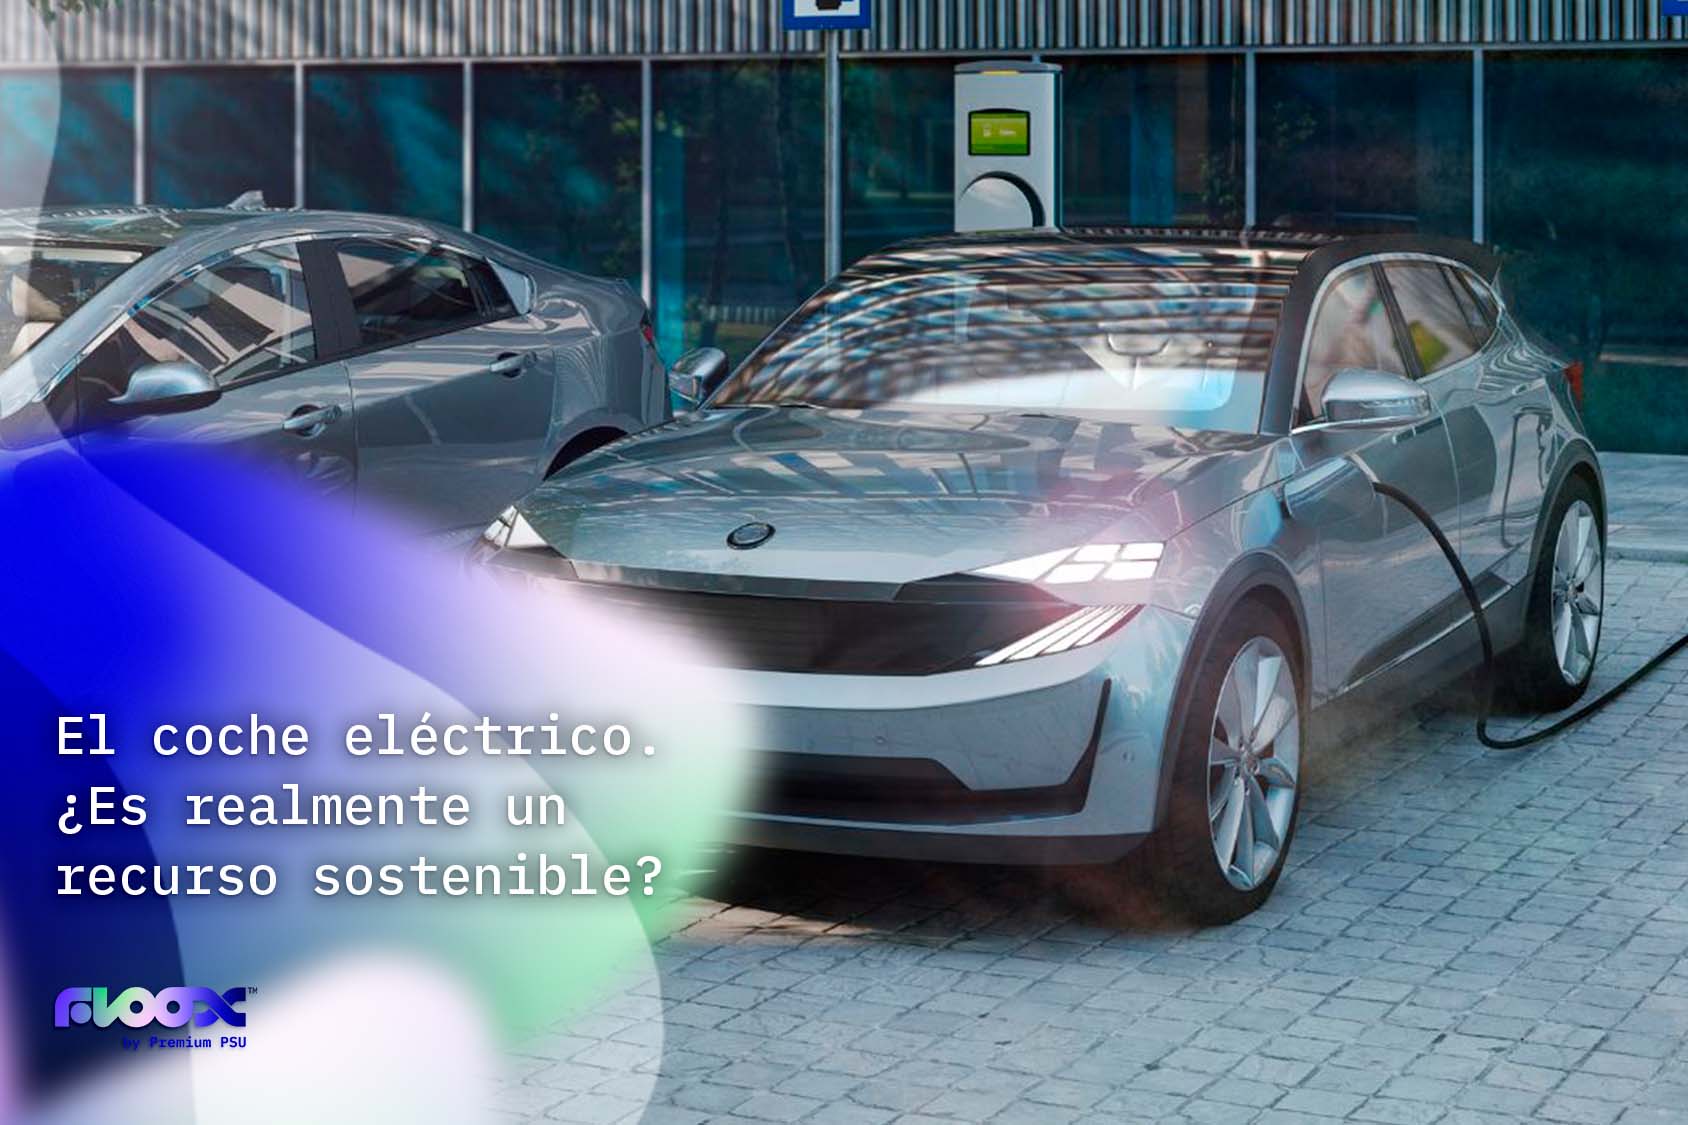 El coche eléctrico. ¿Es realmente un recurso sostenible?